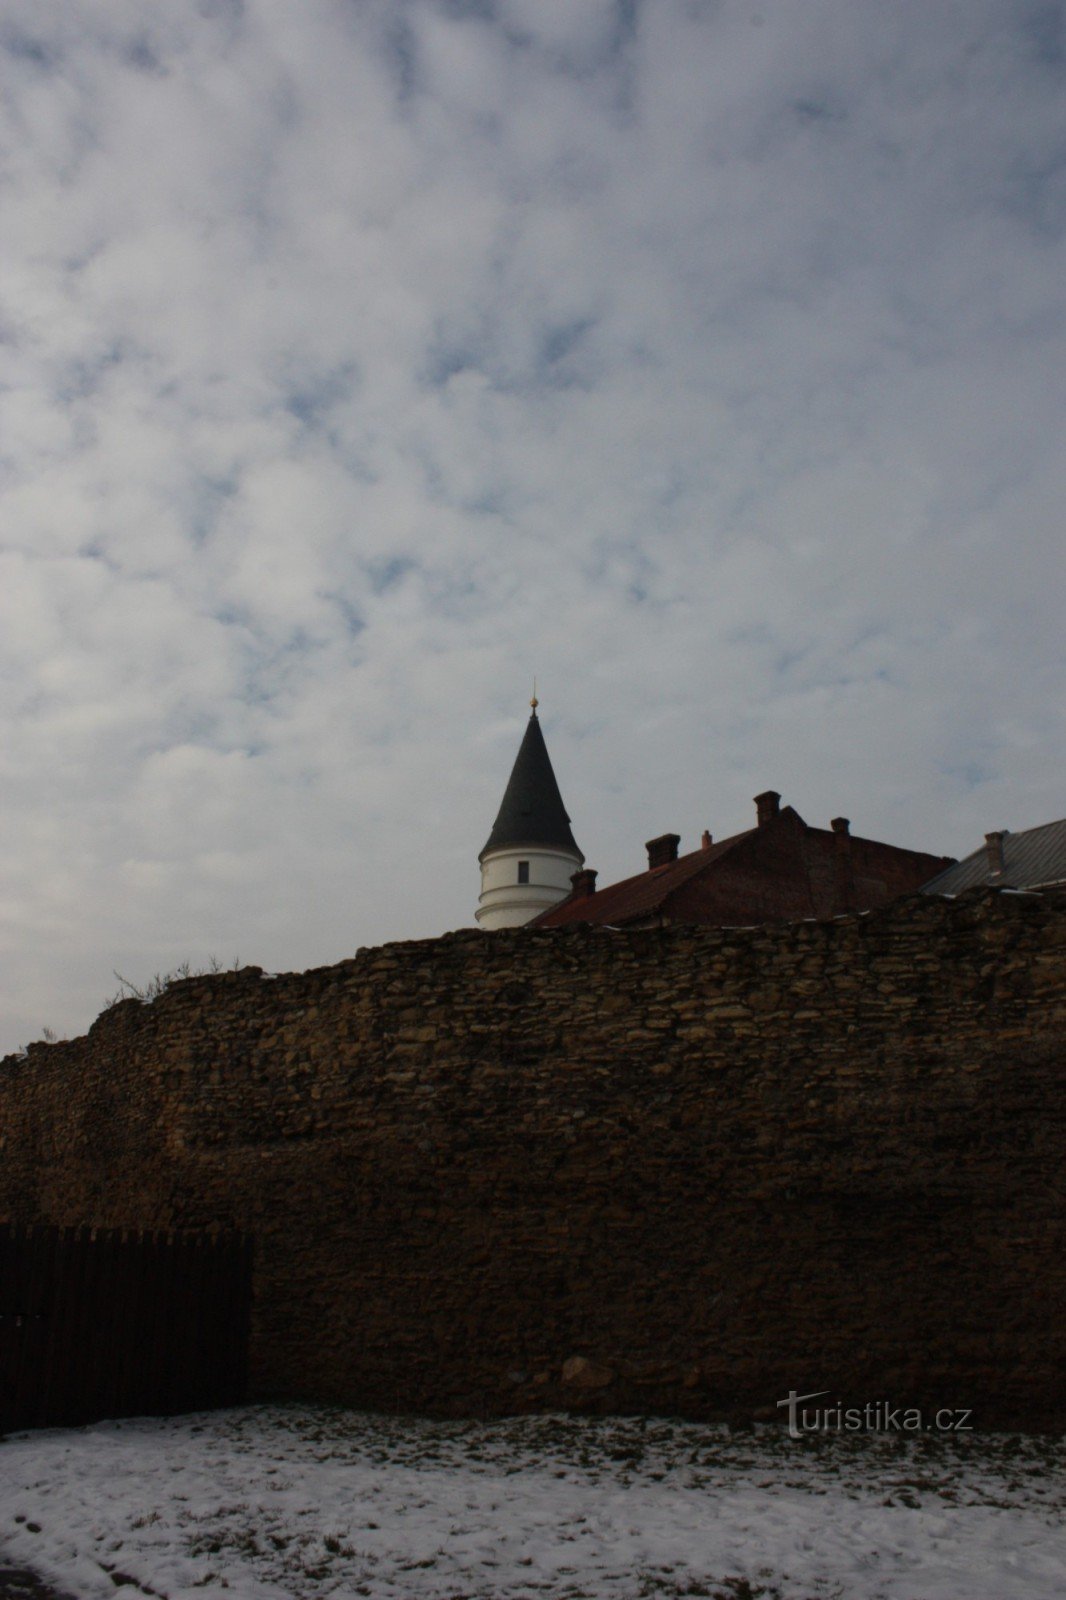 Pozostałości systemu fortyfikacji z XV wieku w Přerov